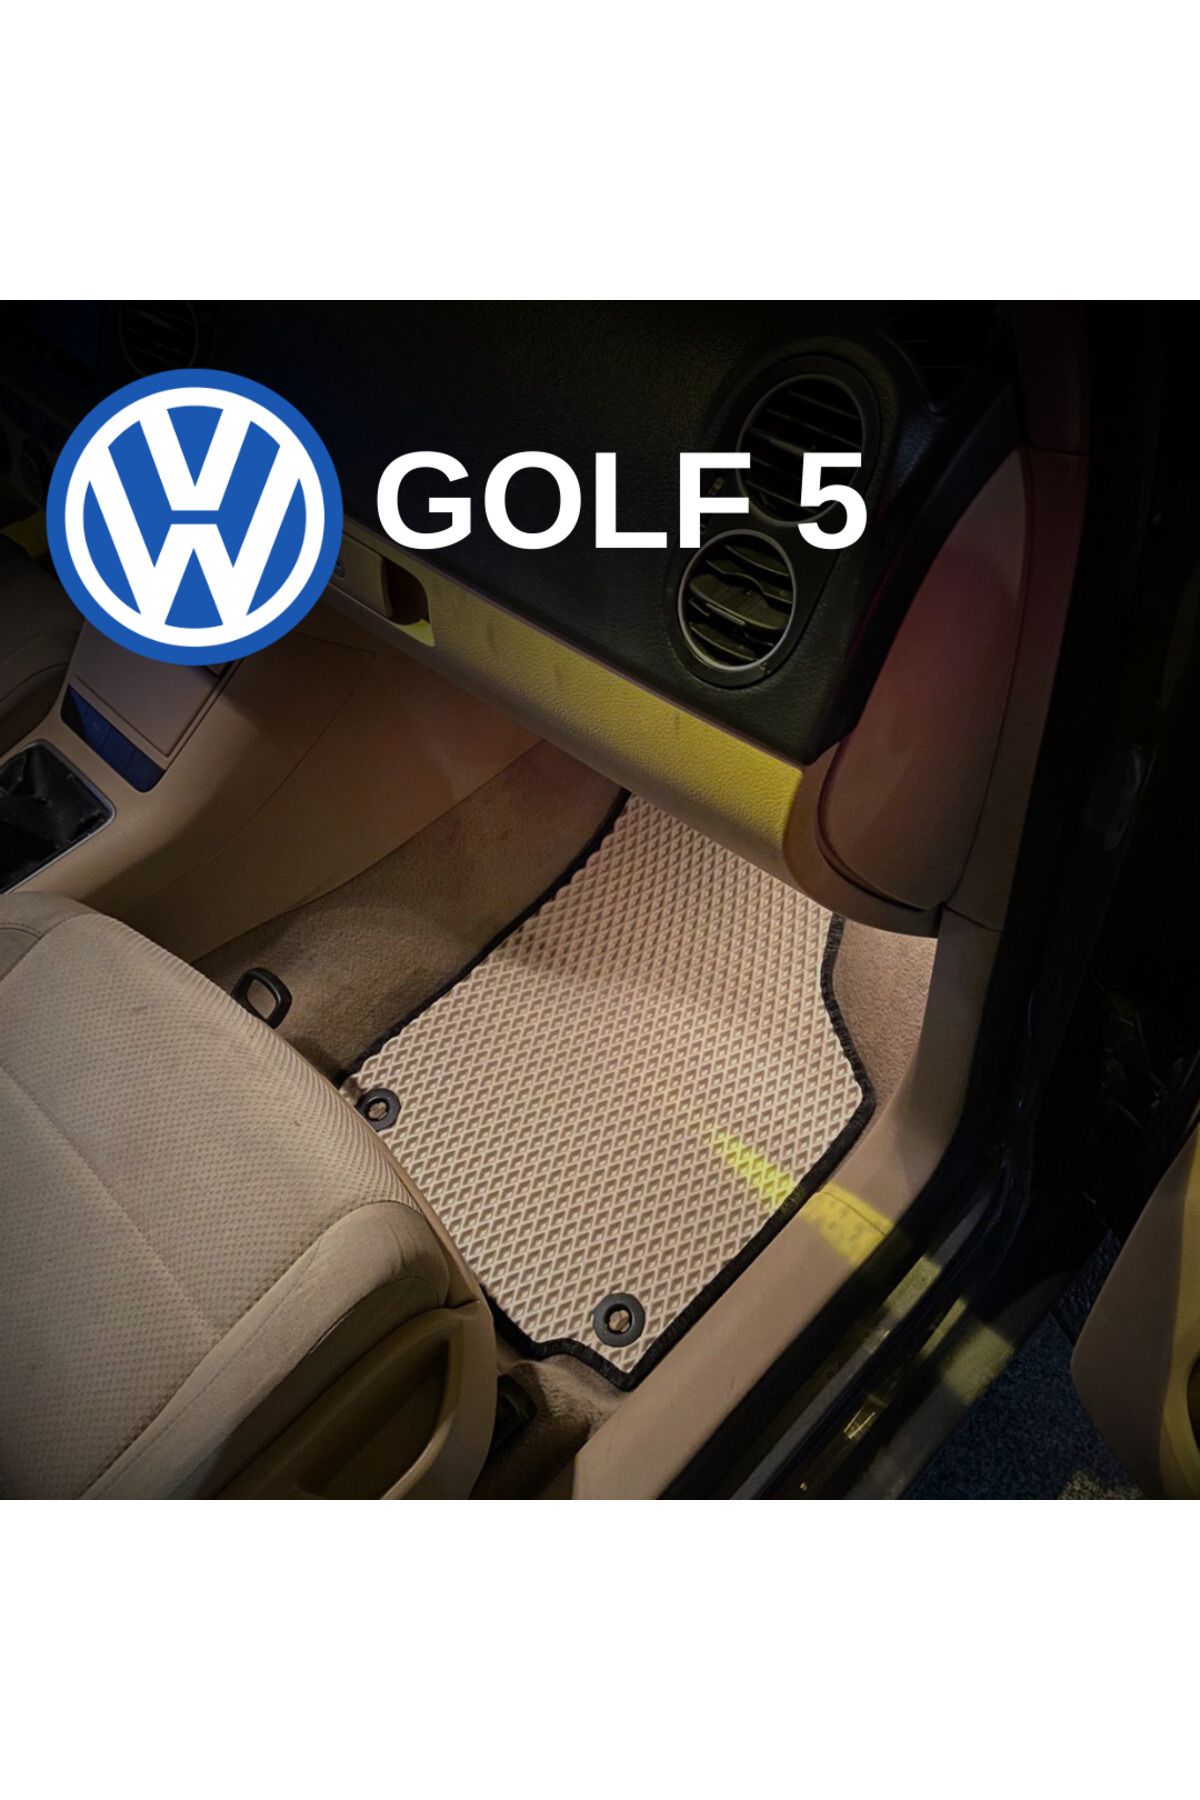 pascar Volkswagen Golf 5 plus  (2005 ve sonrası) araca özel yeni nesil akıllı oto paspas (bej)